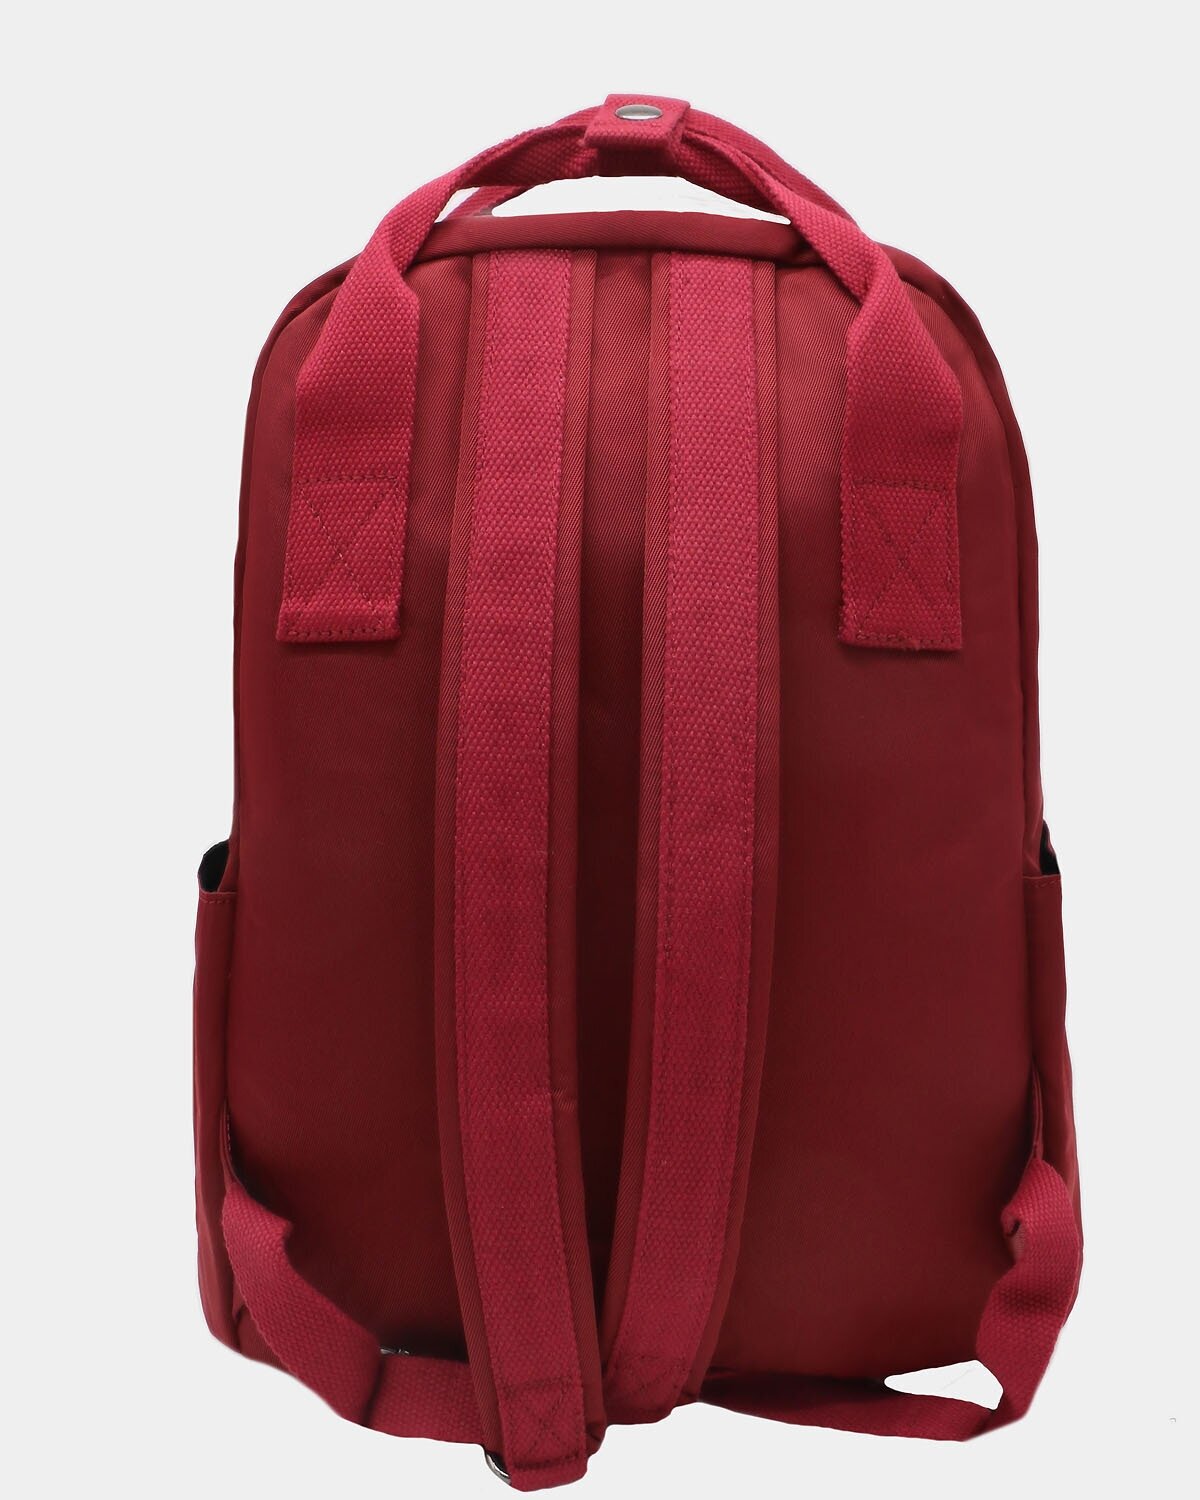 Молодежный городской рюкзак Forever Cultivate 9020-2 с влагозащитой, для учебы, бордовый